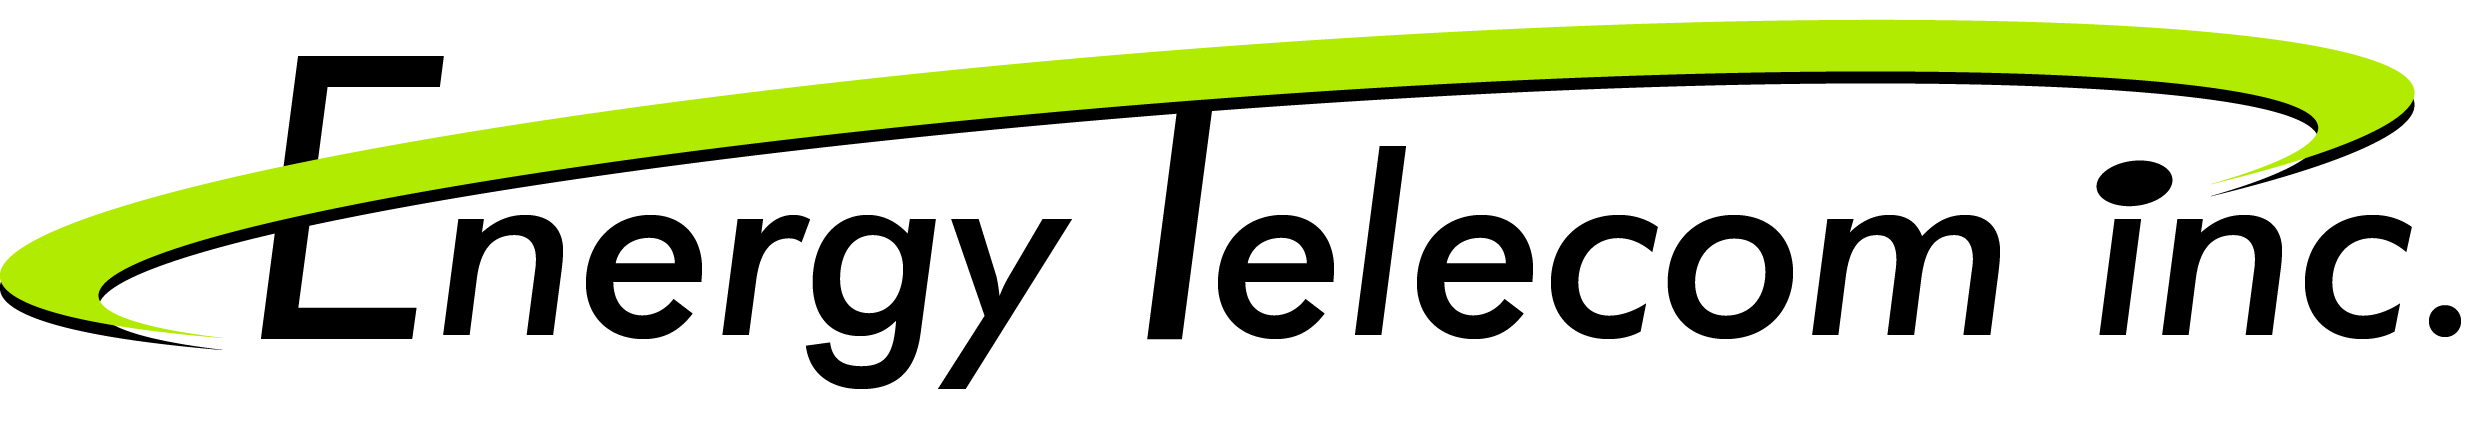 Energy Telecom Inc. Logo